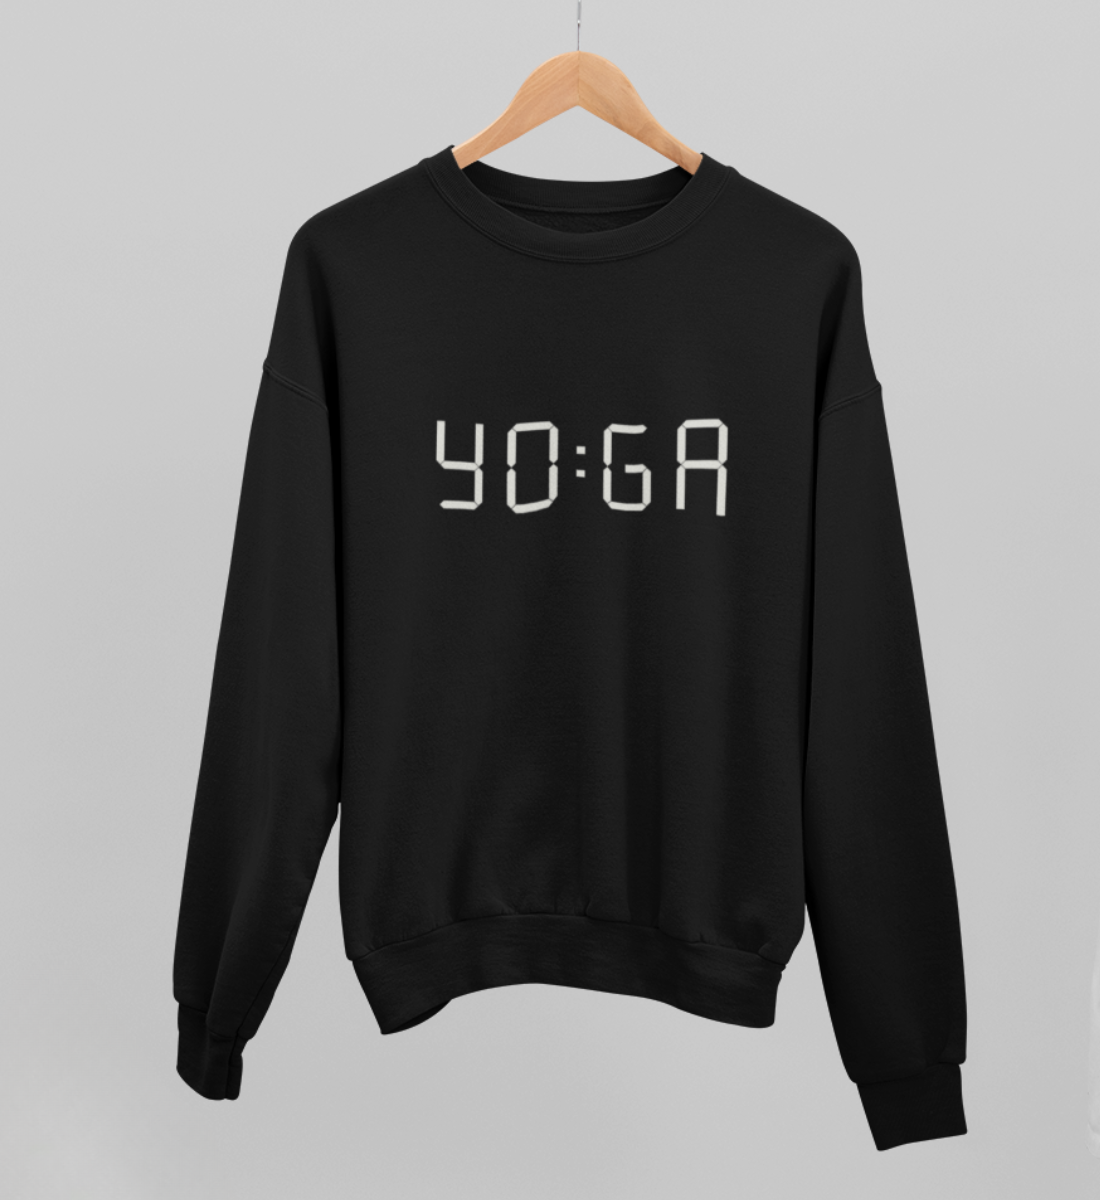 zeit für yoga l yoga sweatshirt schwarz l pullover bio-baumwolle l nachhaltige yoga kleidung l natürliche und ökologische materialien aus nachhaltiger produktion l yoga mode online shoppen